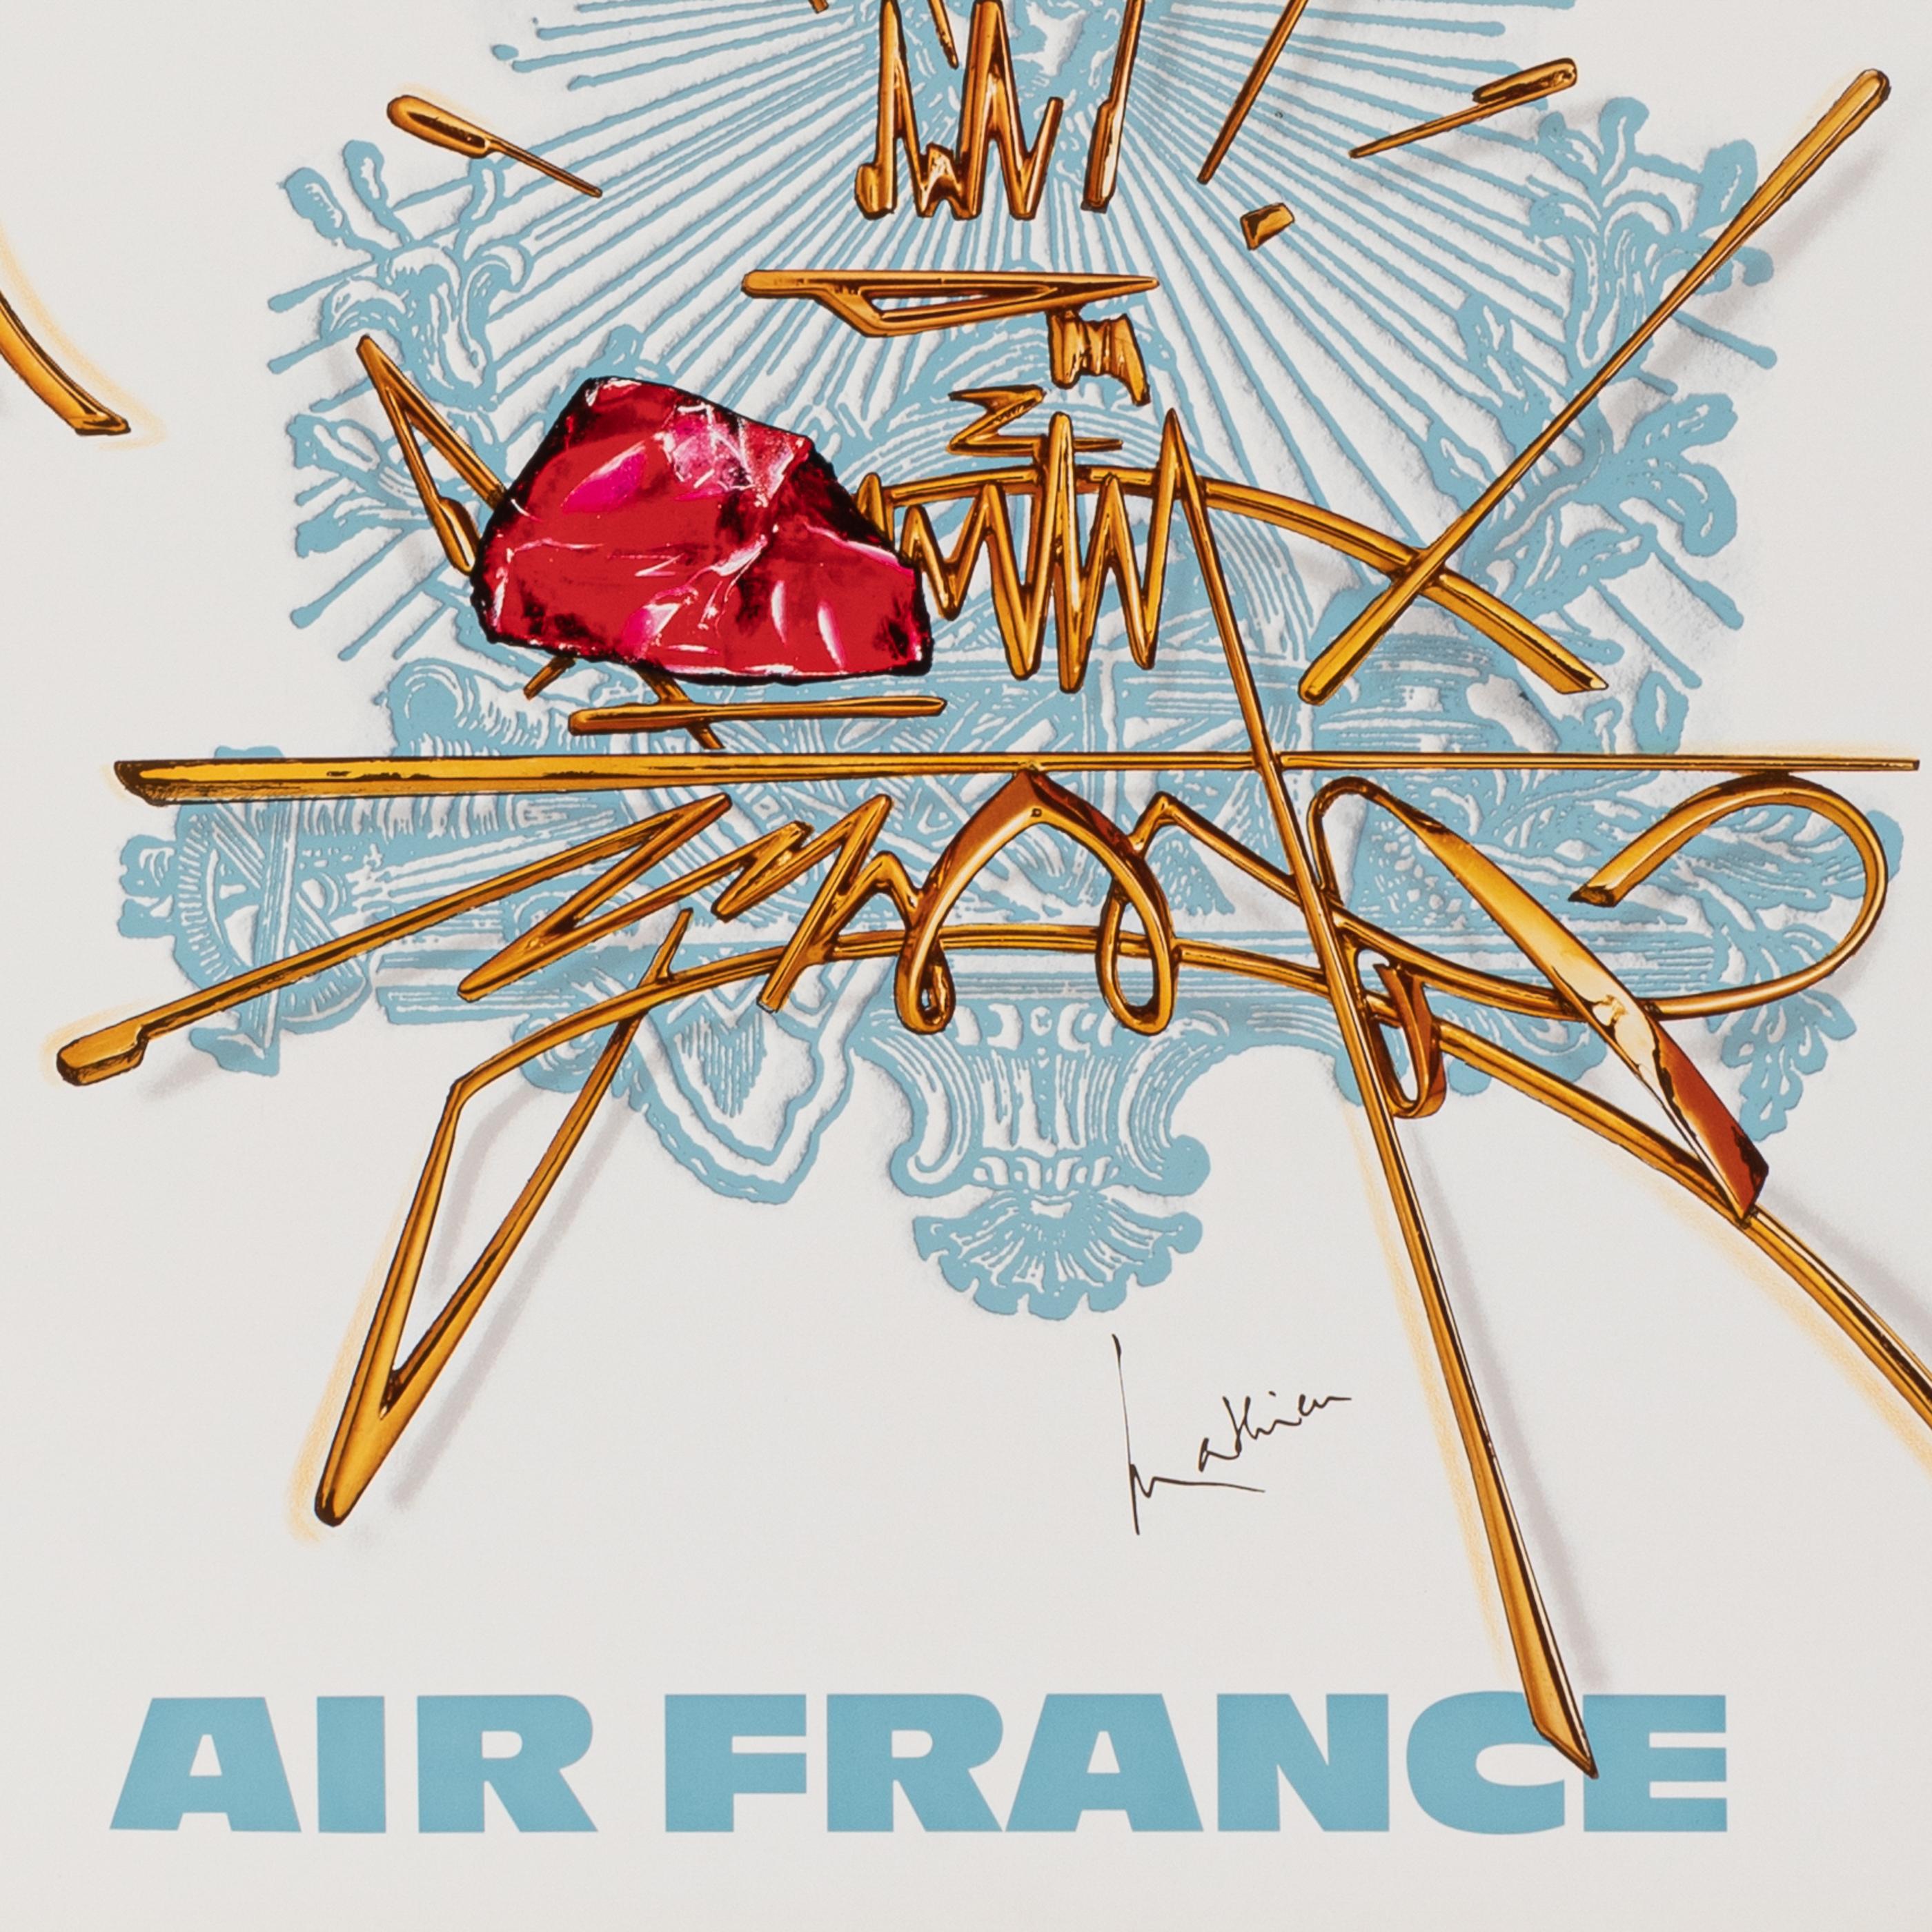 Français Georges Mathieu, Original Vintage Airline Poster, Air France Tour Eiffel, 1967 en vente